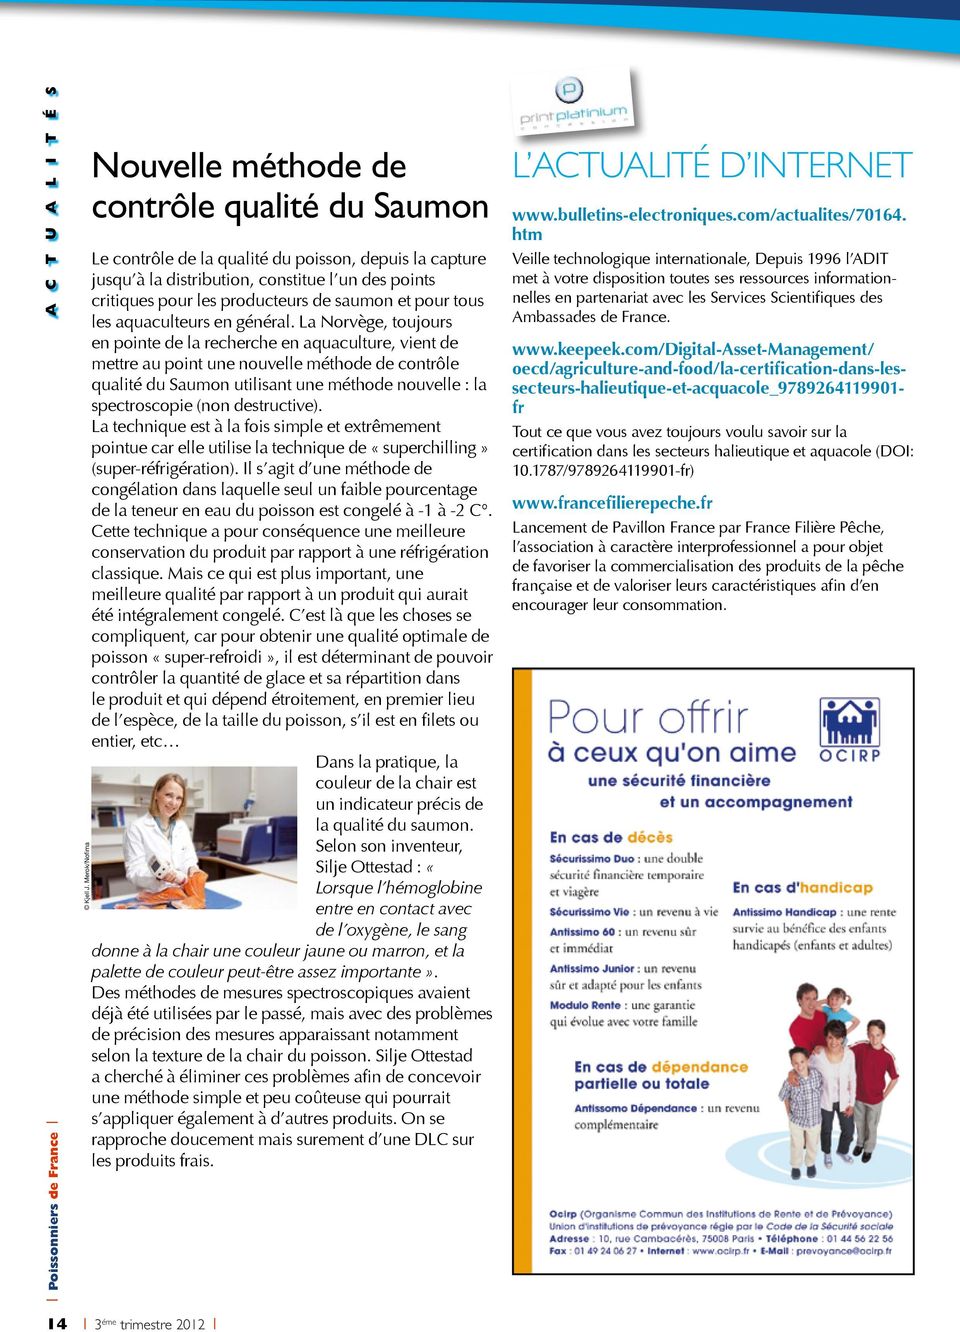 La Norvège, toujours en pointe de la recherche en aquaculture, vient de mettre au point une nouvelle méthode de contrôle qualité du Saumon utilisant une méthode nouvelle : la spectroscopie (non